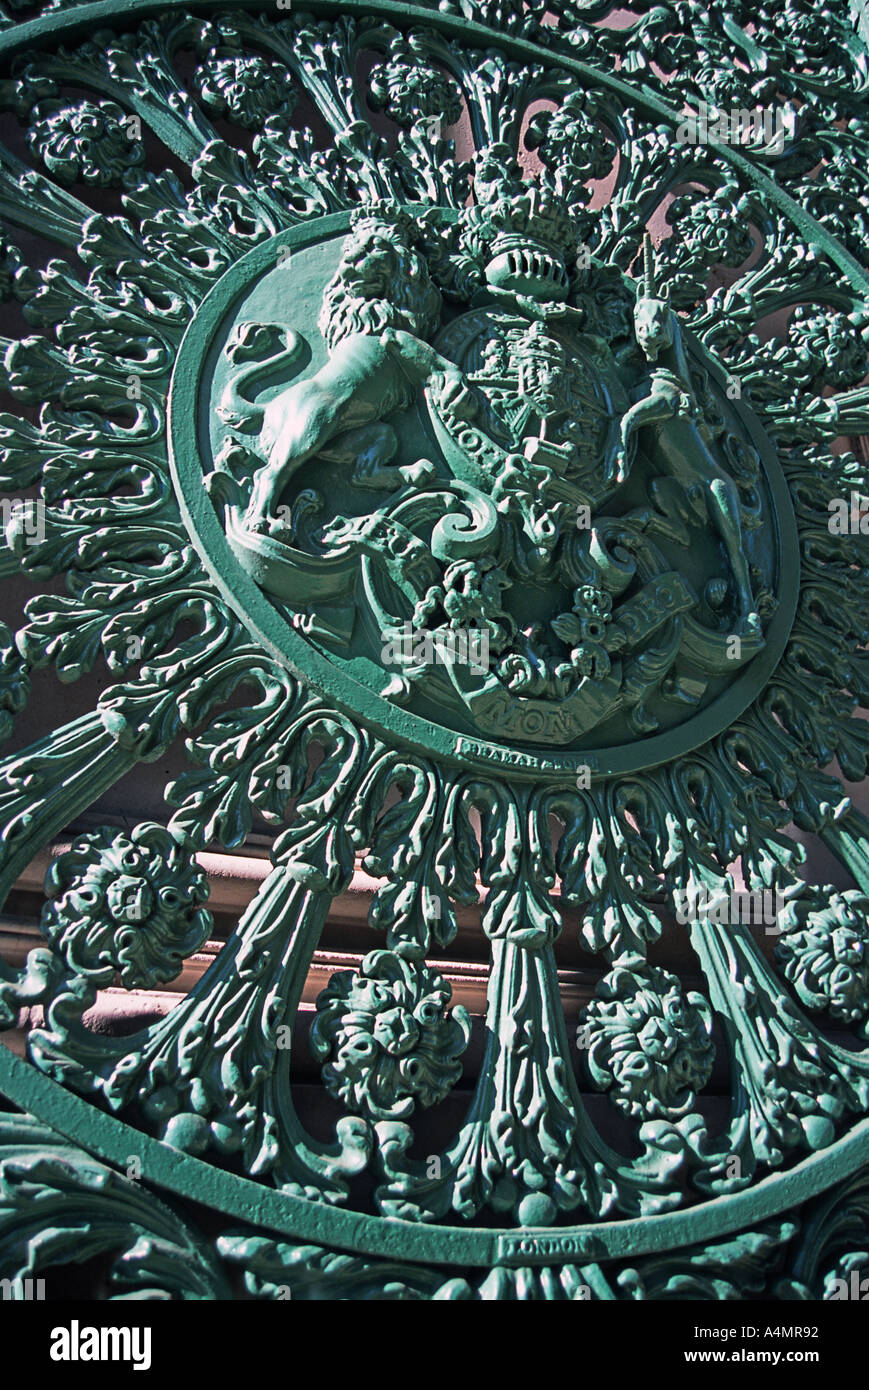 Dettaglio del royal araldico insegne sul cast cancello di ferro sotto il Wellington Arch Hyde Park Corner London Inghilterra England Foto Stock